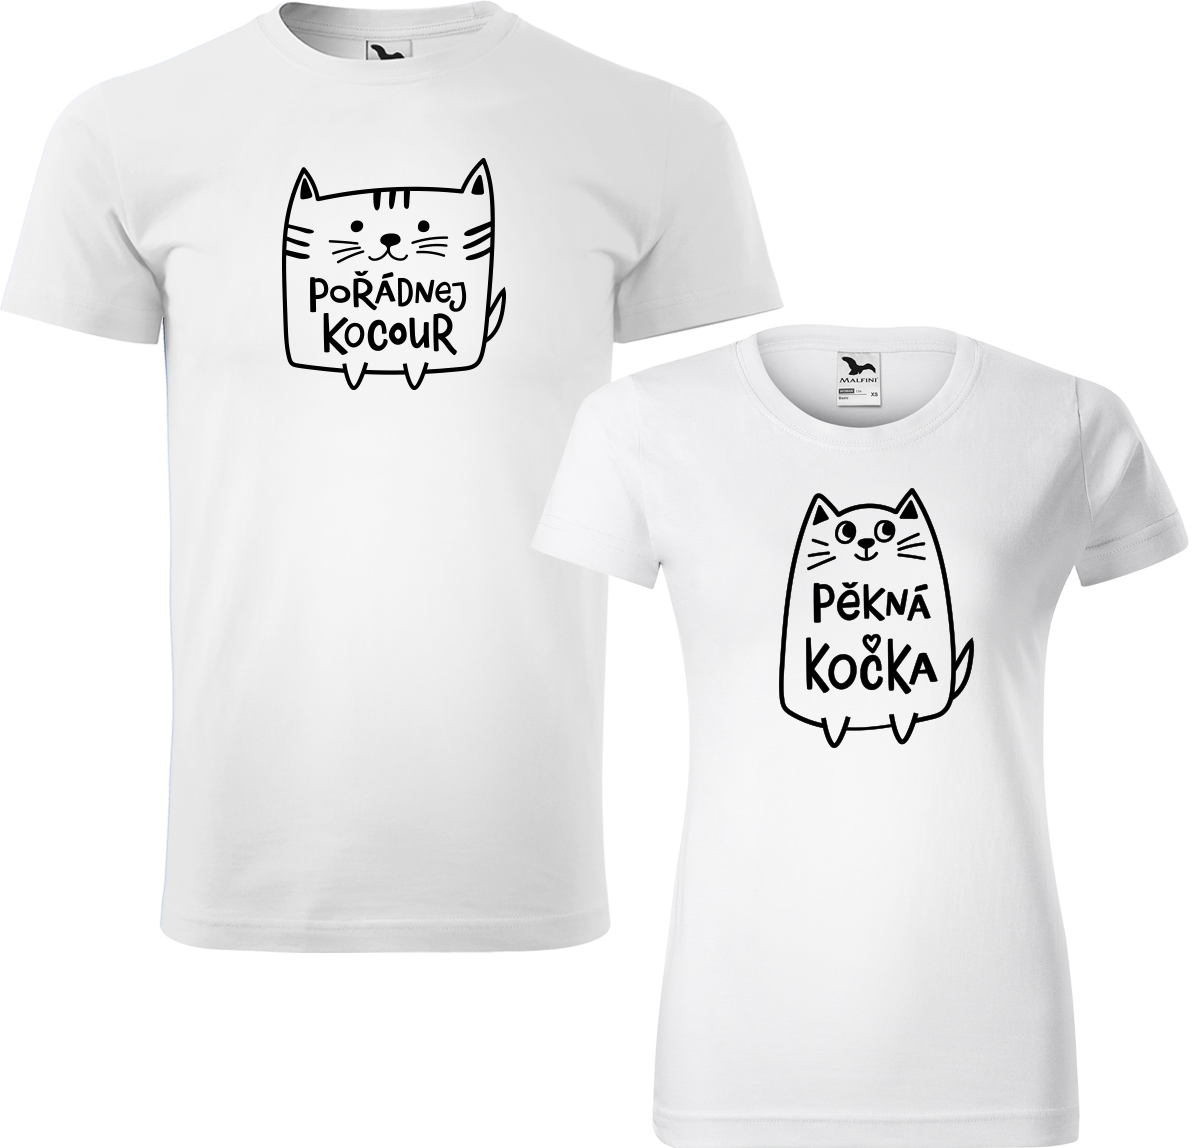 Trička pro páry - Pořádnej kocour a pěkná kočka Barva: Bílá (00), Velikost dámské tričko: M, Velikost pánské tričko: M